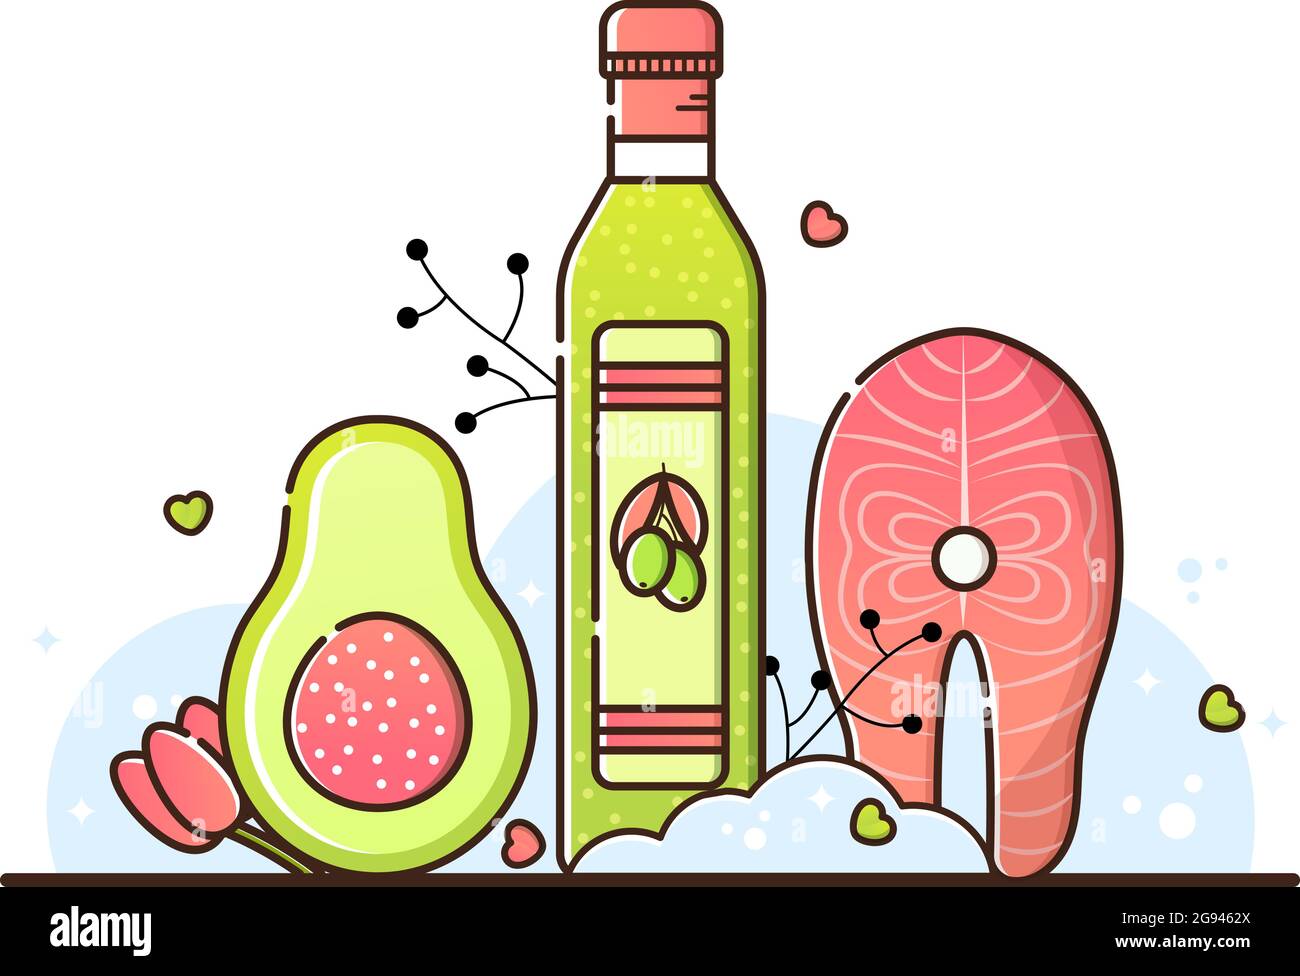 Illustrazione vettoriale della dieta del keto su sfondo bianco. Olio d'oliva, bistecca di salmone e avocado. Prodotti utili per la perdita di peso, la cottura. Il menu per Th Illustrazione Vettoriale